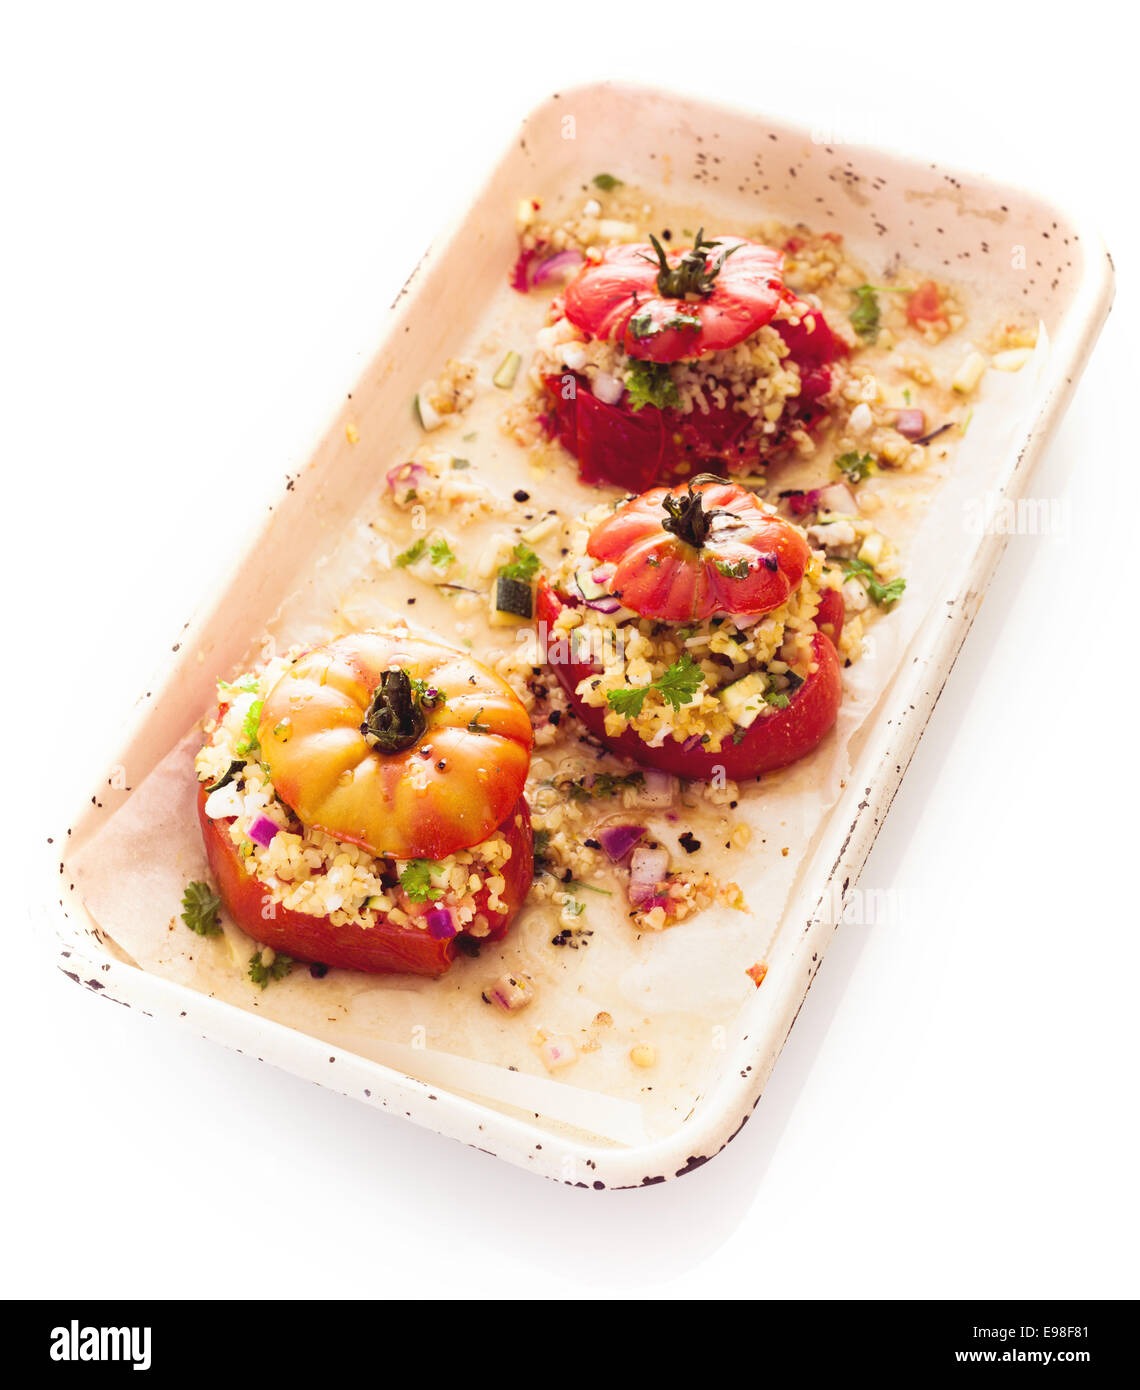 Portion gesunde vegetarische Küche mit einem Teller gefüllte Reife rote Gebackene Tomaten mit Couscous, Zwiebel und Kräutern auf weißem Hintergrund Stockfoto